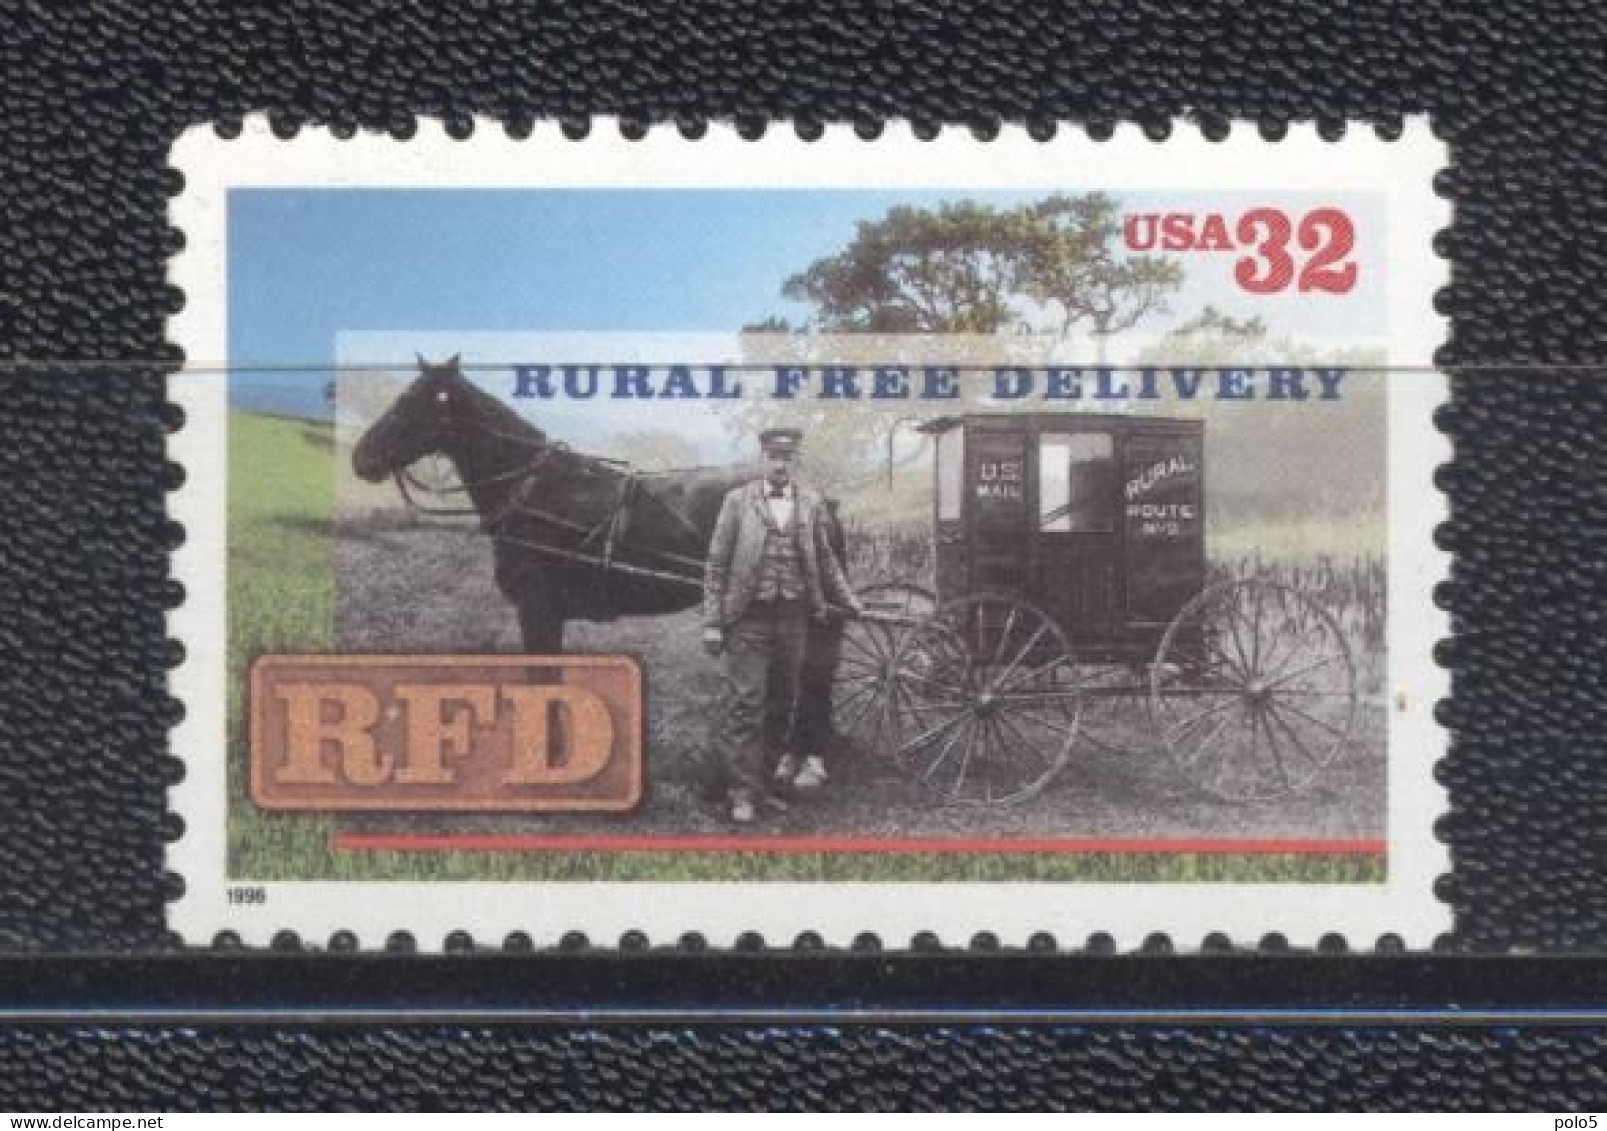 USA 1996- Rural Free Delivery Set (1v) - Unused Stamps